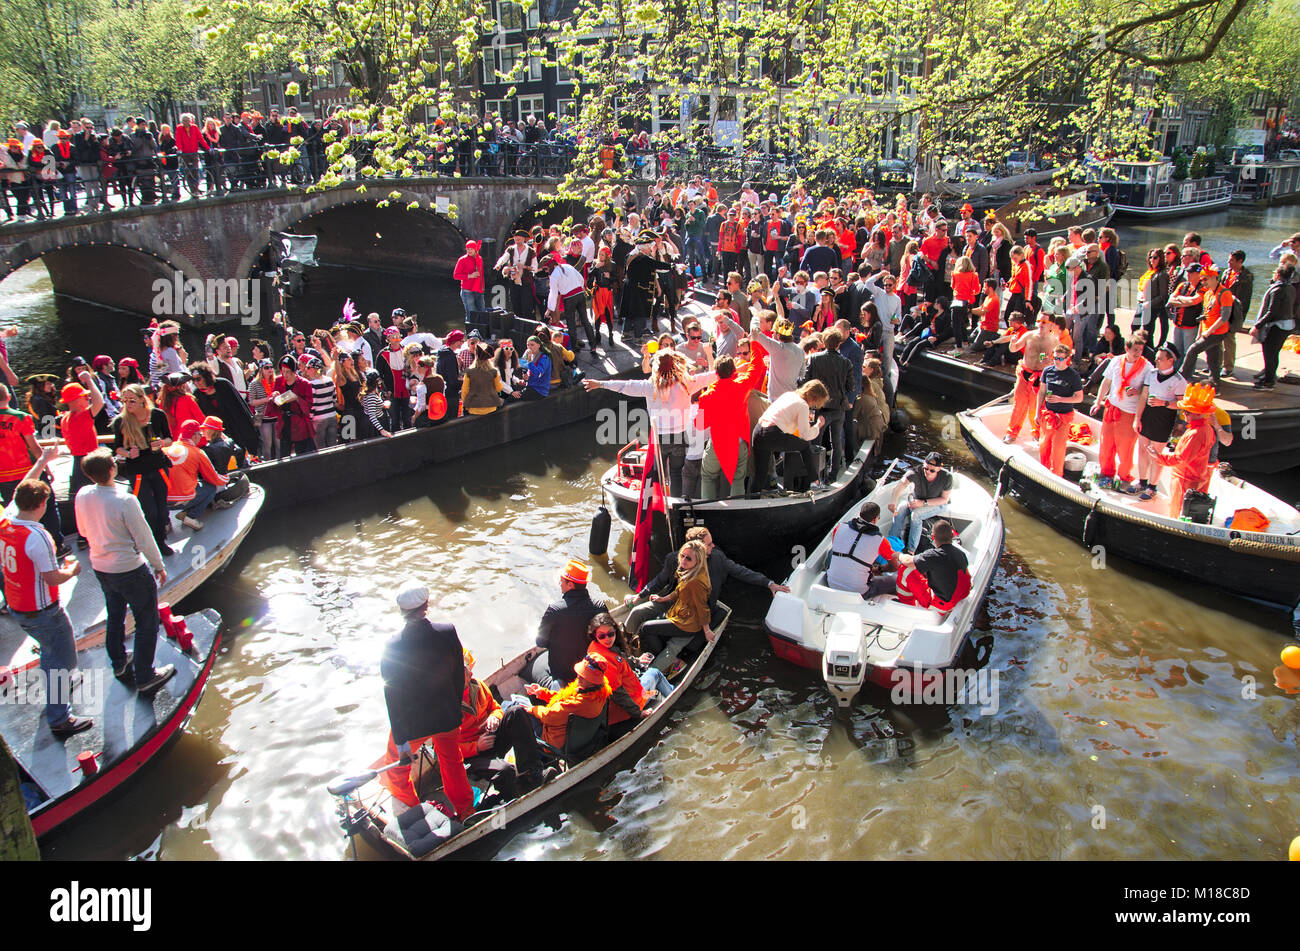 Ein Stau auf Amsterdam Canal auf King's Tag. Mehrere Boote auf einer Kreuzung stecken alle voller glücklich feiern Menschen. Stockfoto